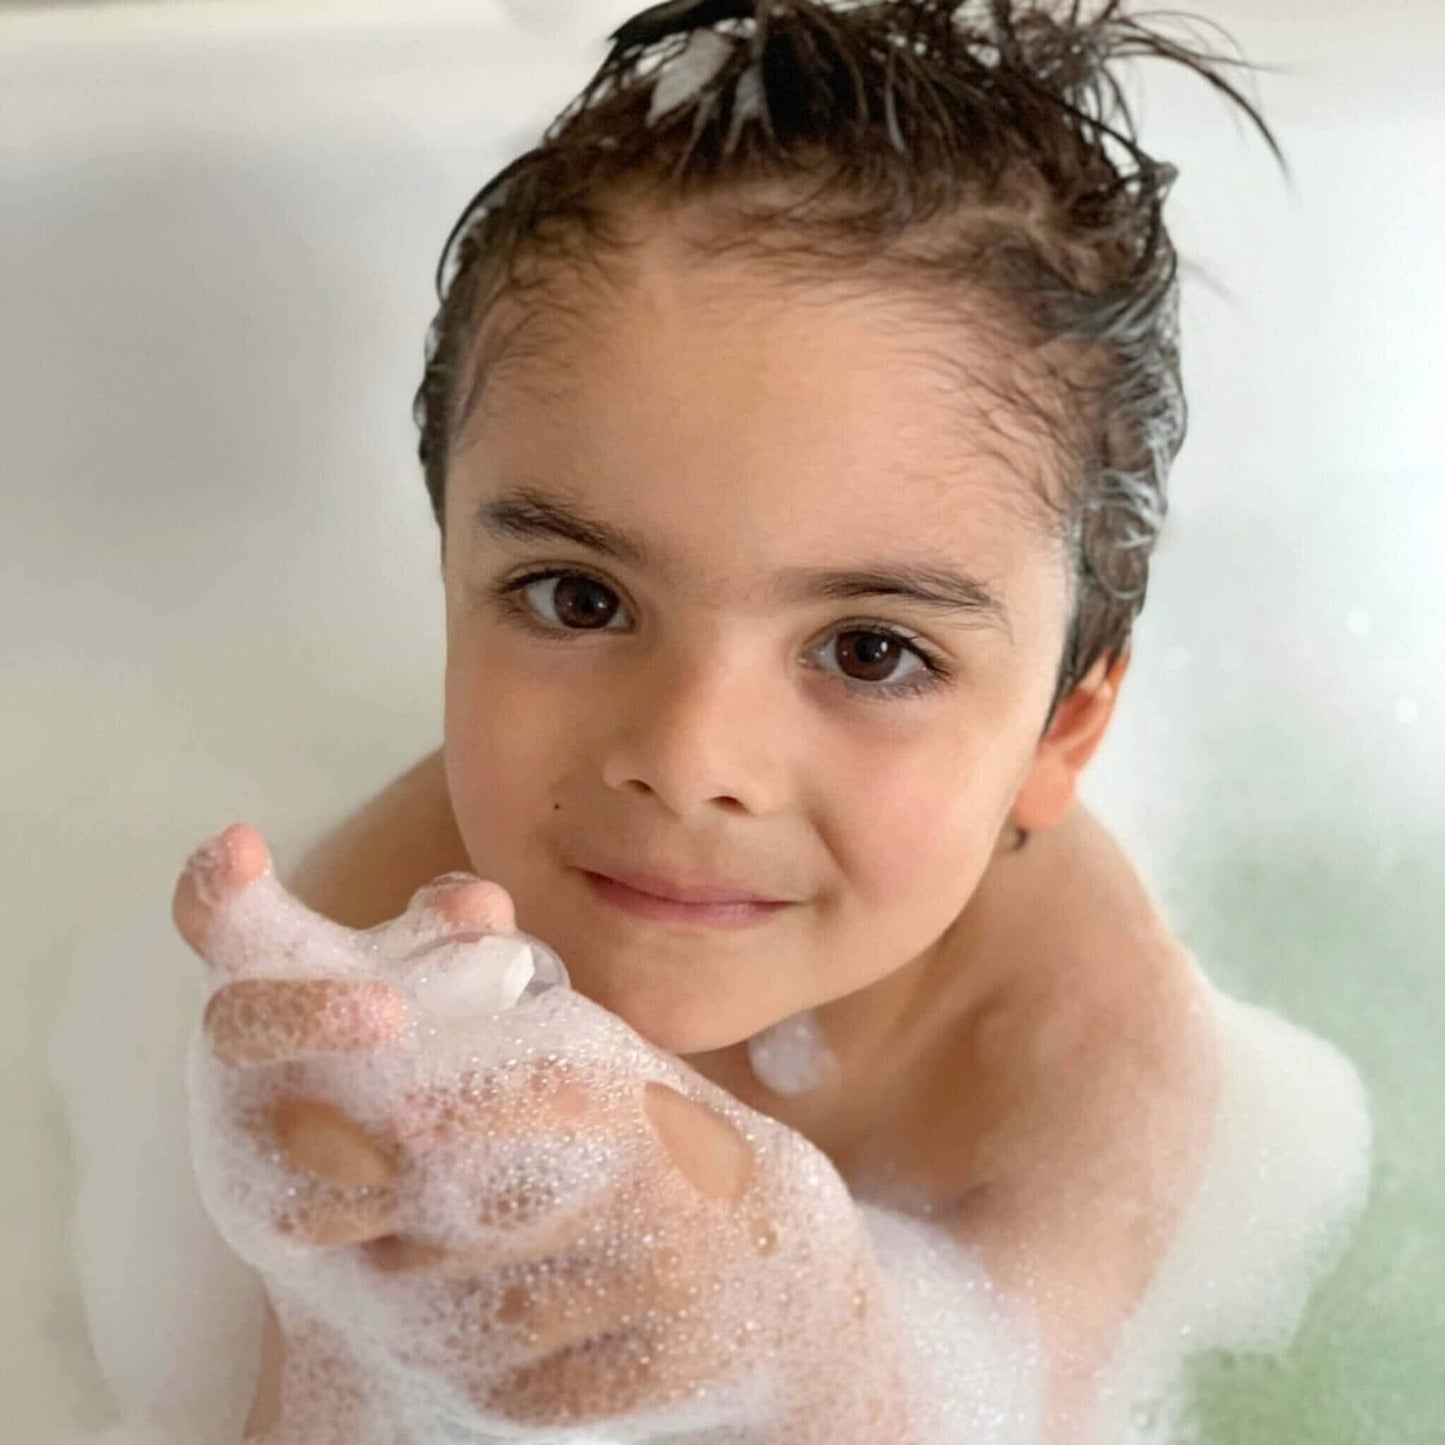 Little Boy with Luxury Bubble Bath for Children's Sensitive Skin (Pump)